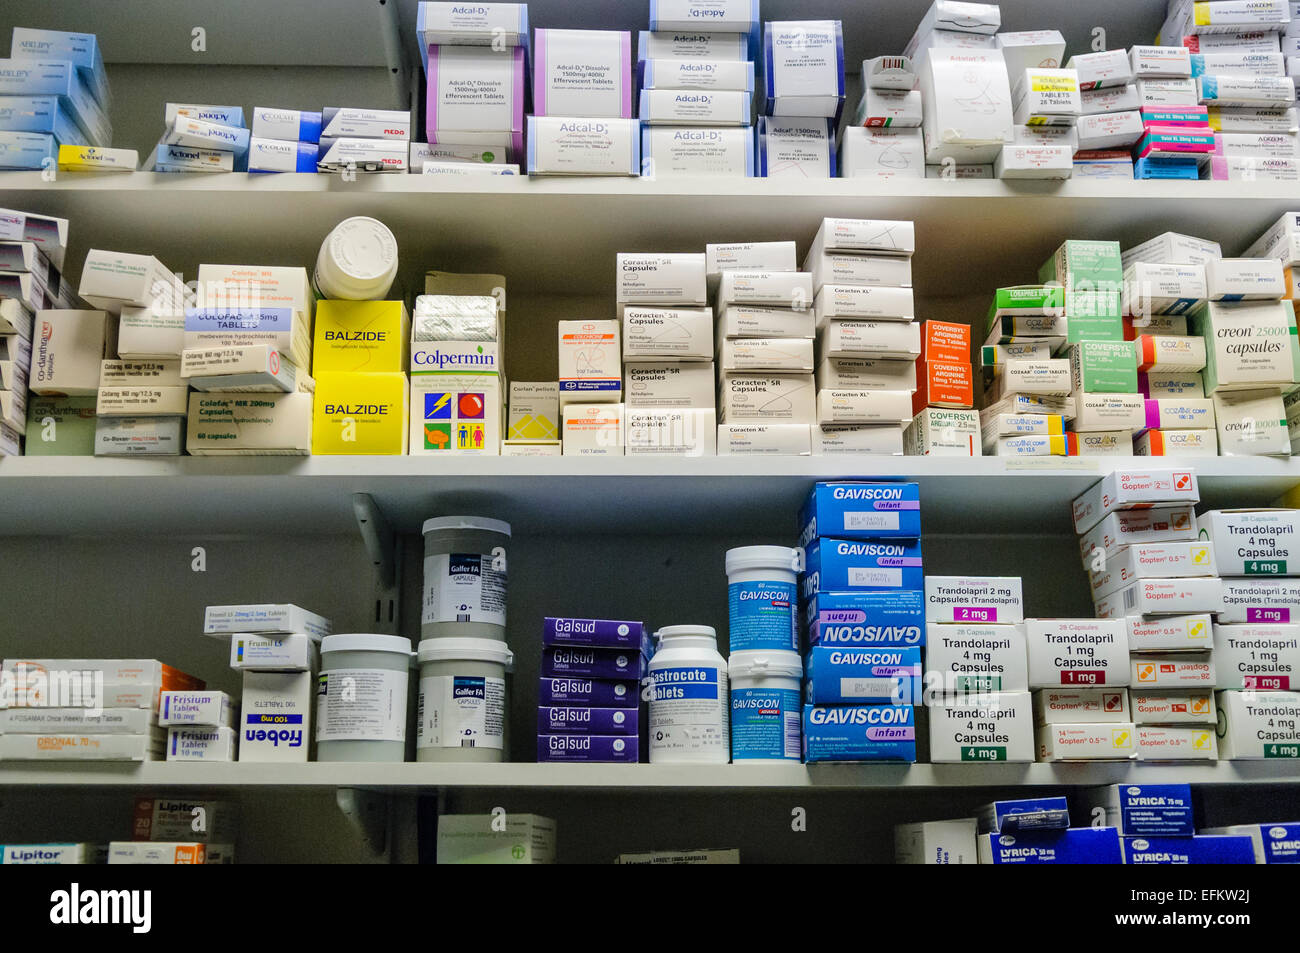 https://c8.alamy.com/comp/EFKW2J/lots-of-prescription-medication-on-shelves-in-a-pharmacy-EFKW2J.jpg